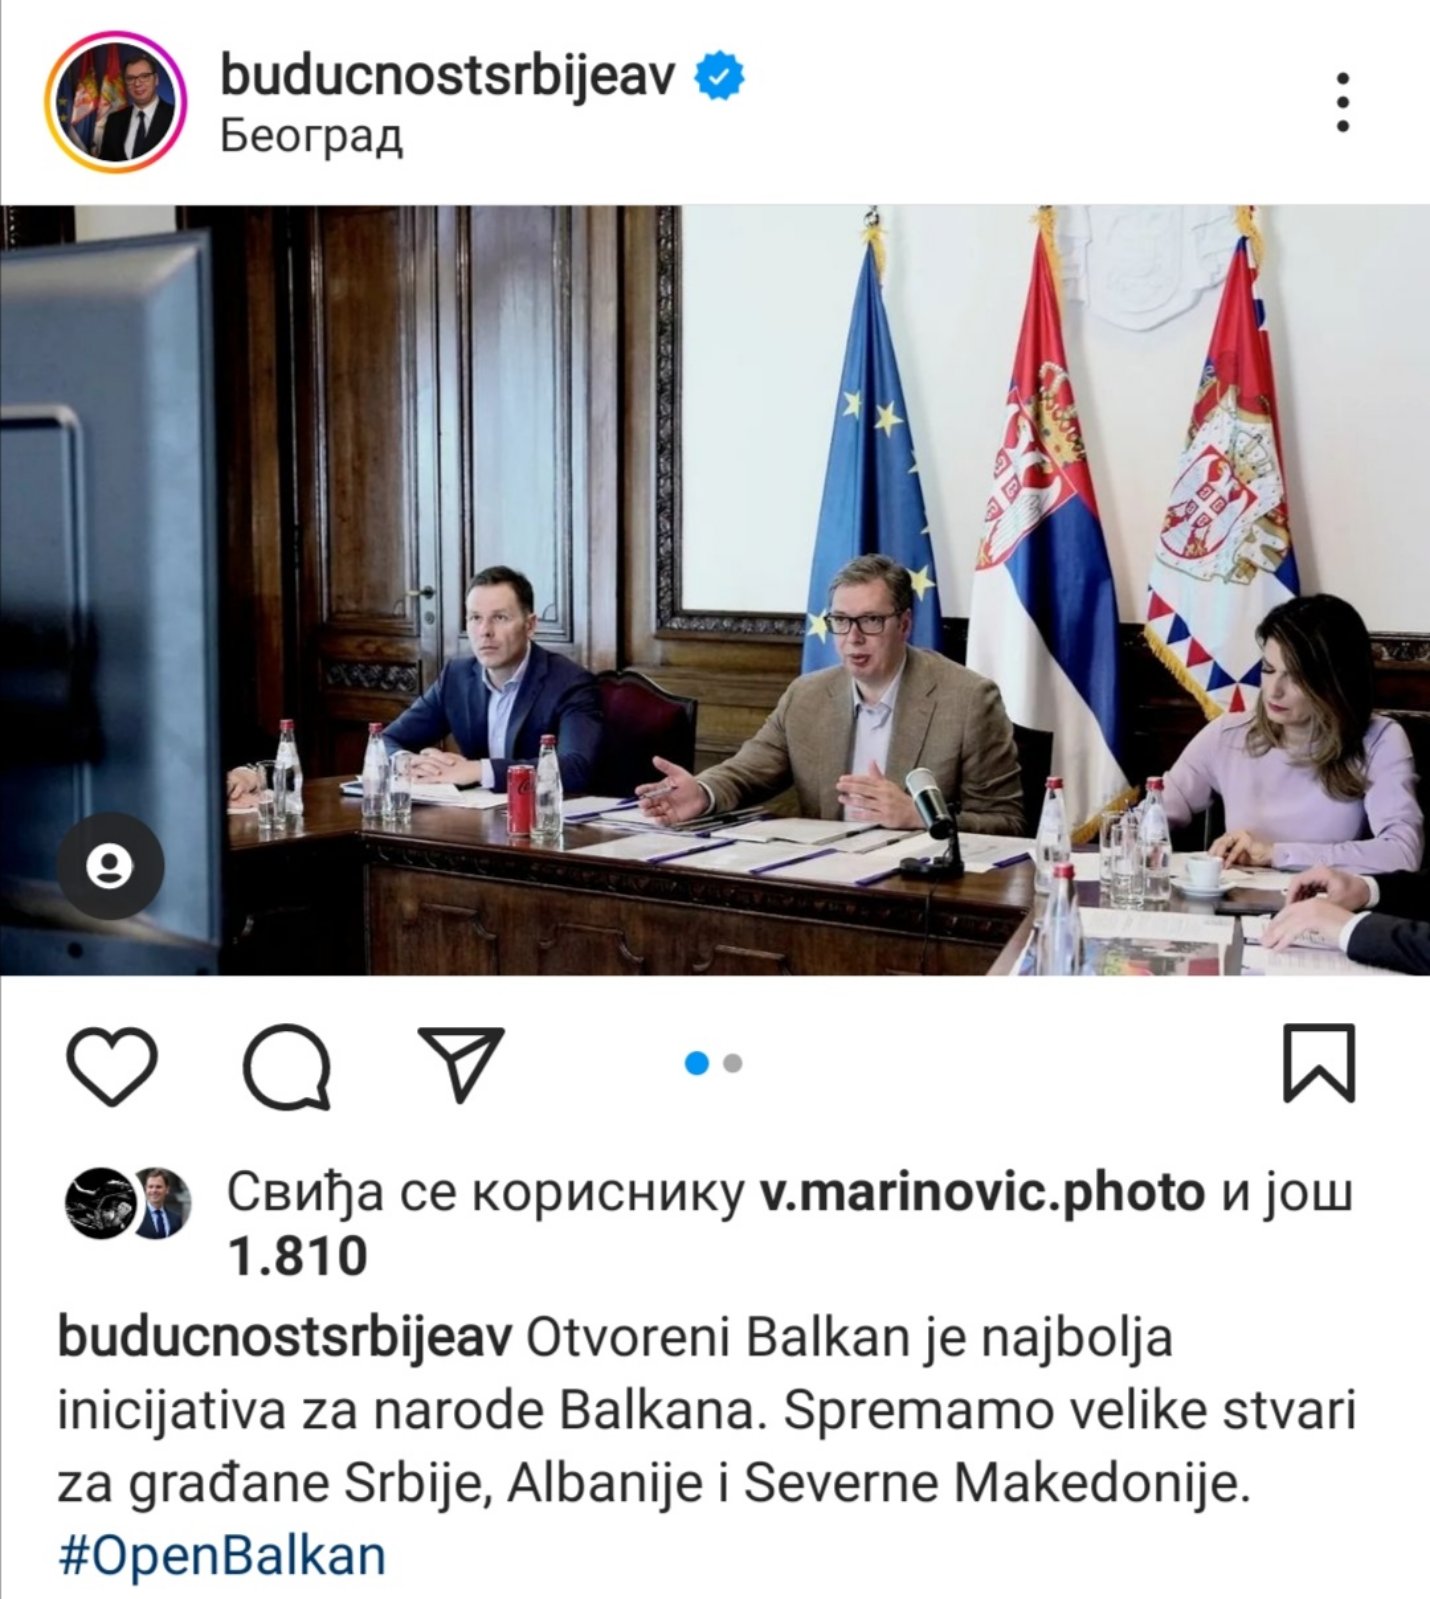 Predsednik Vučić: Spremamo velike stvari za građane Srbije, Albanije i Severne Makedonije